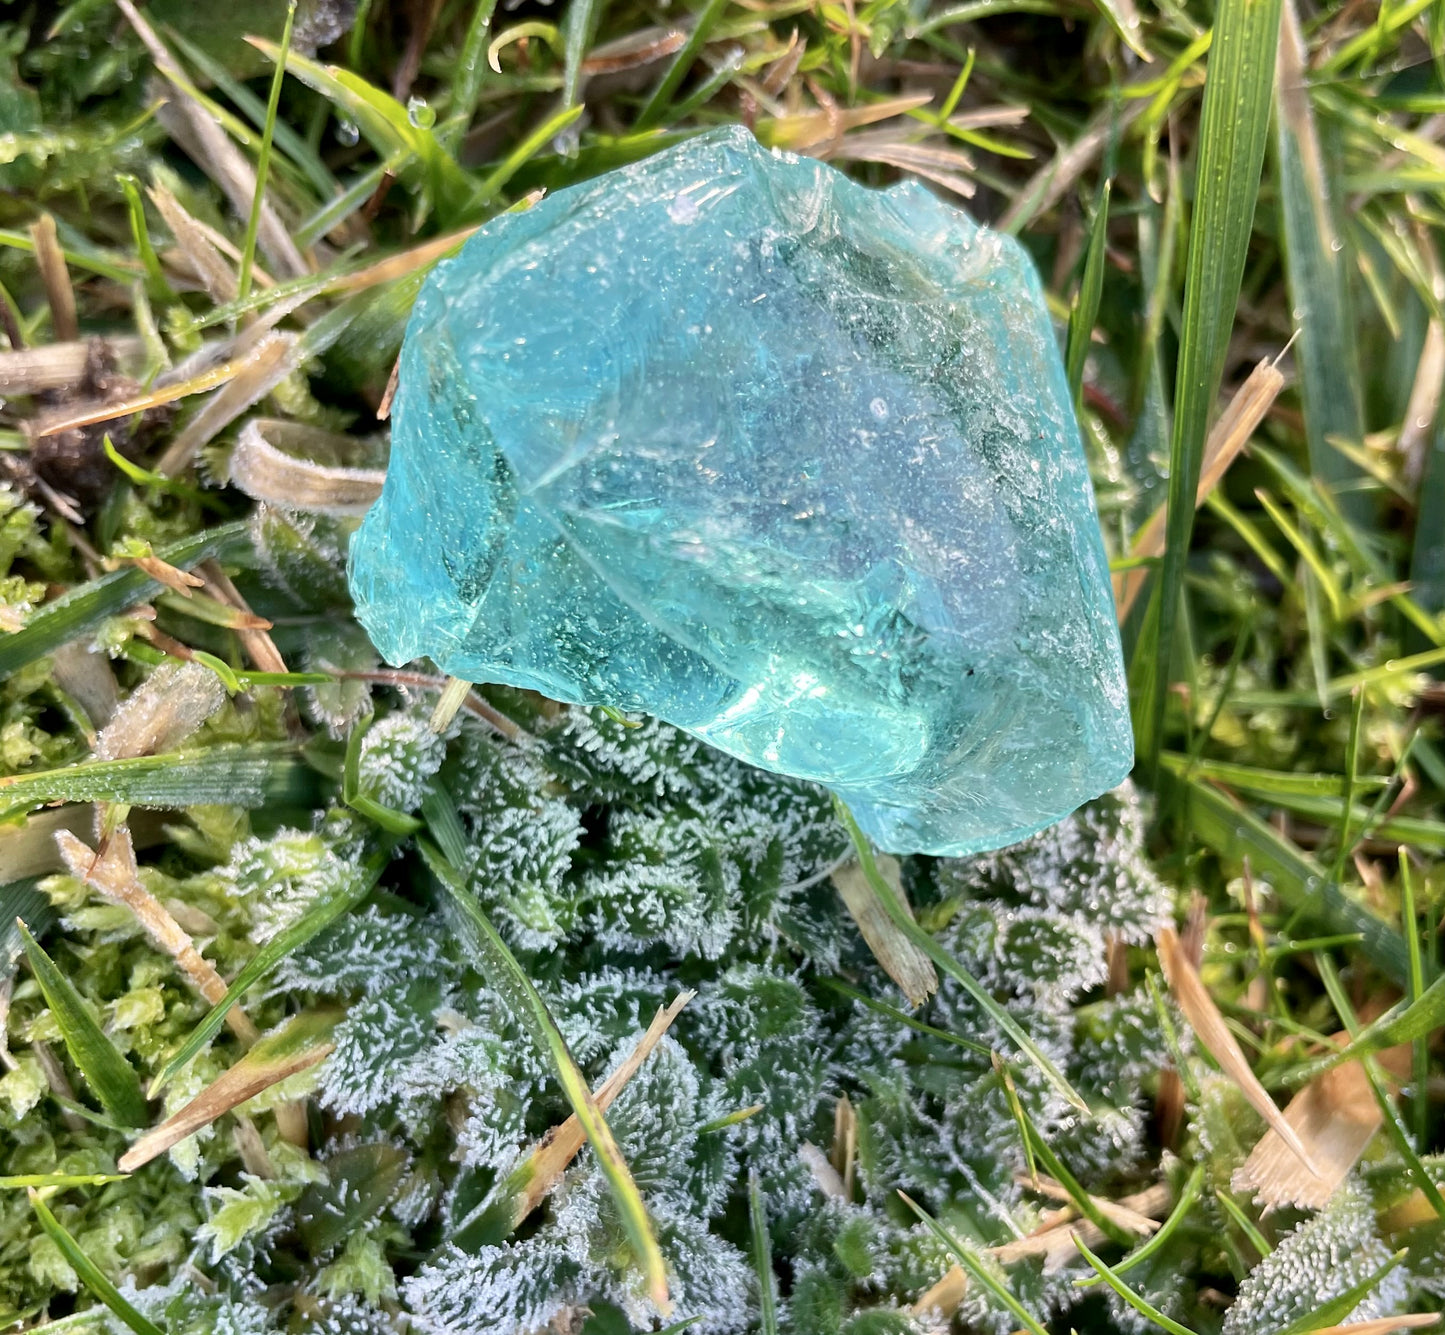 ANDARA Africain Bleu vert irisé 45 g ~  mineral monoatomique